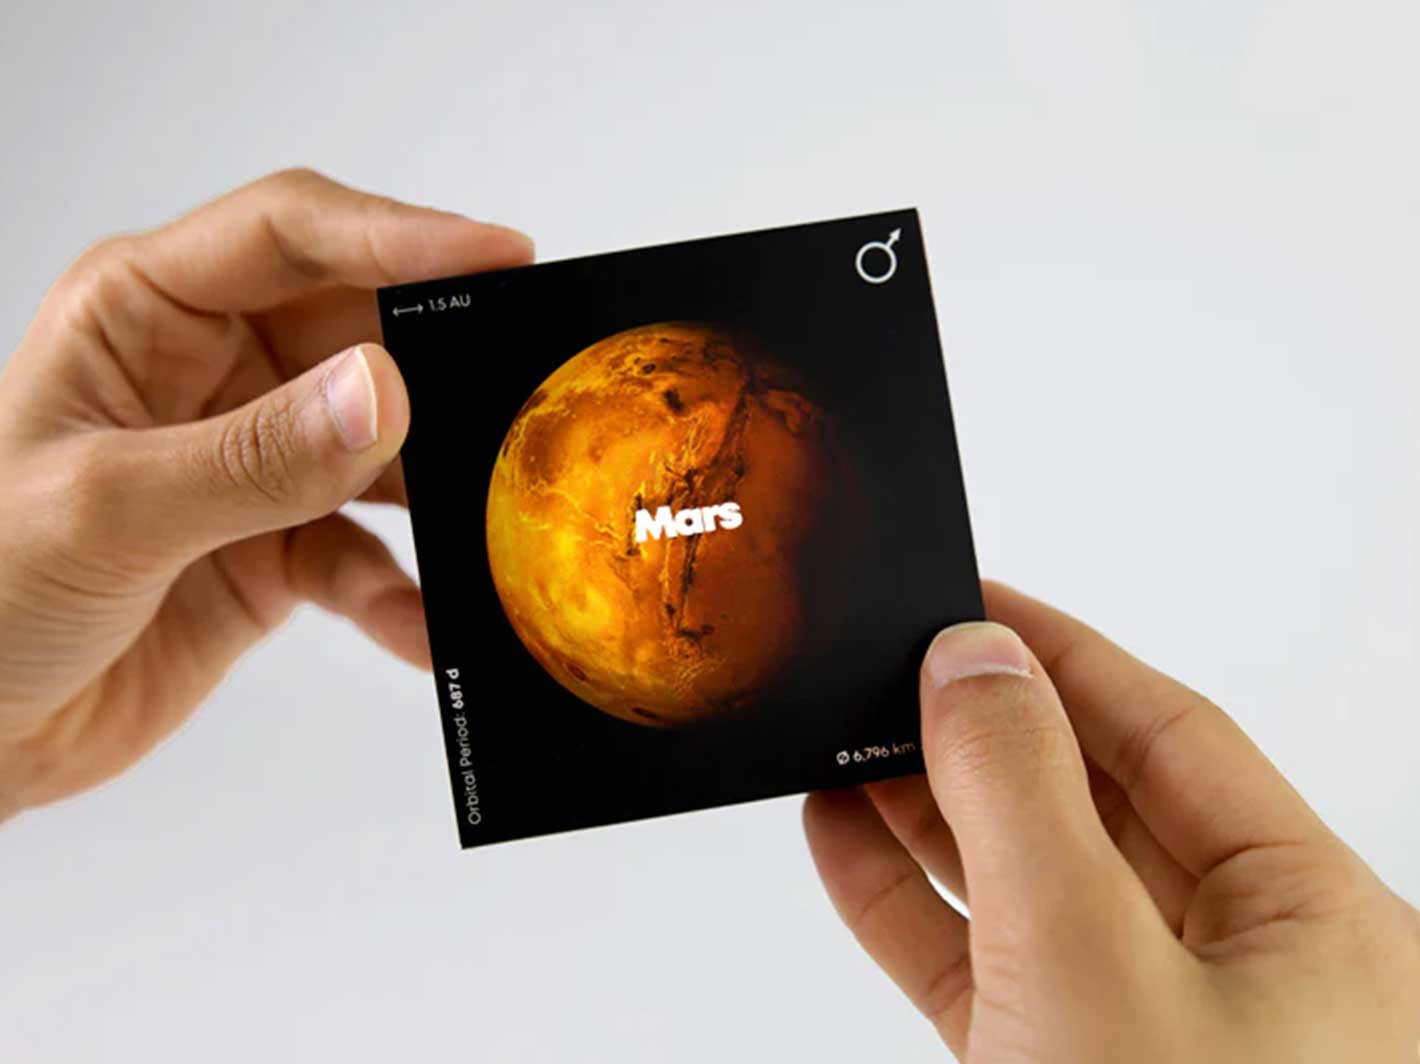 Mars Flipbook